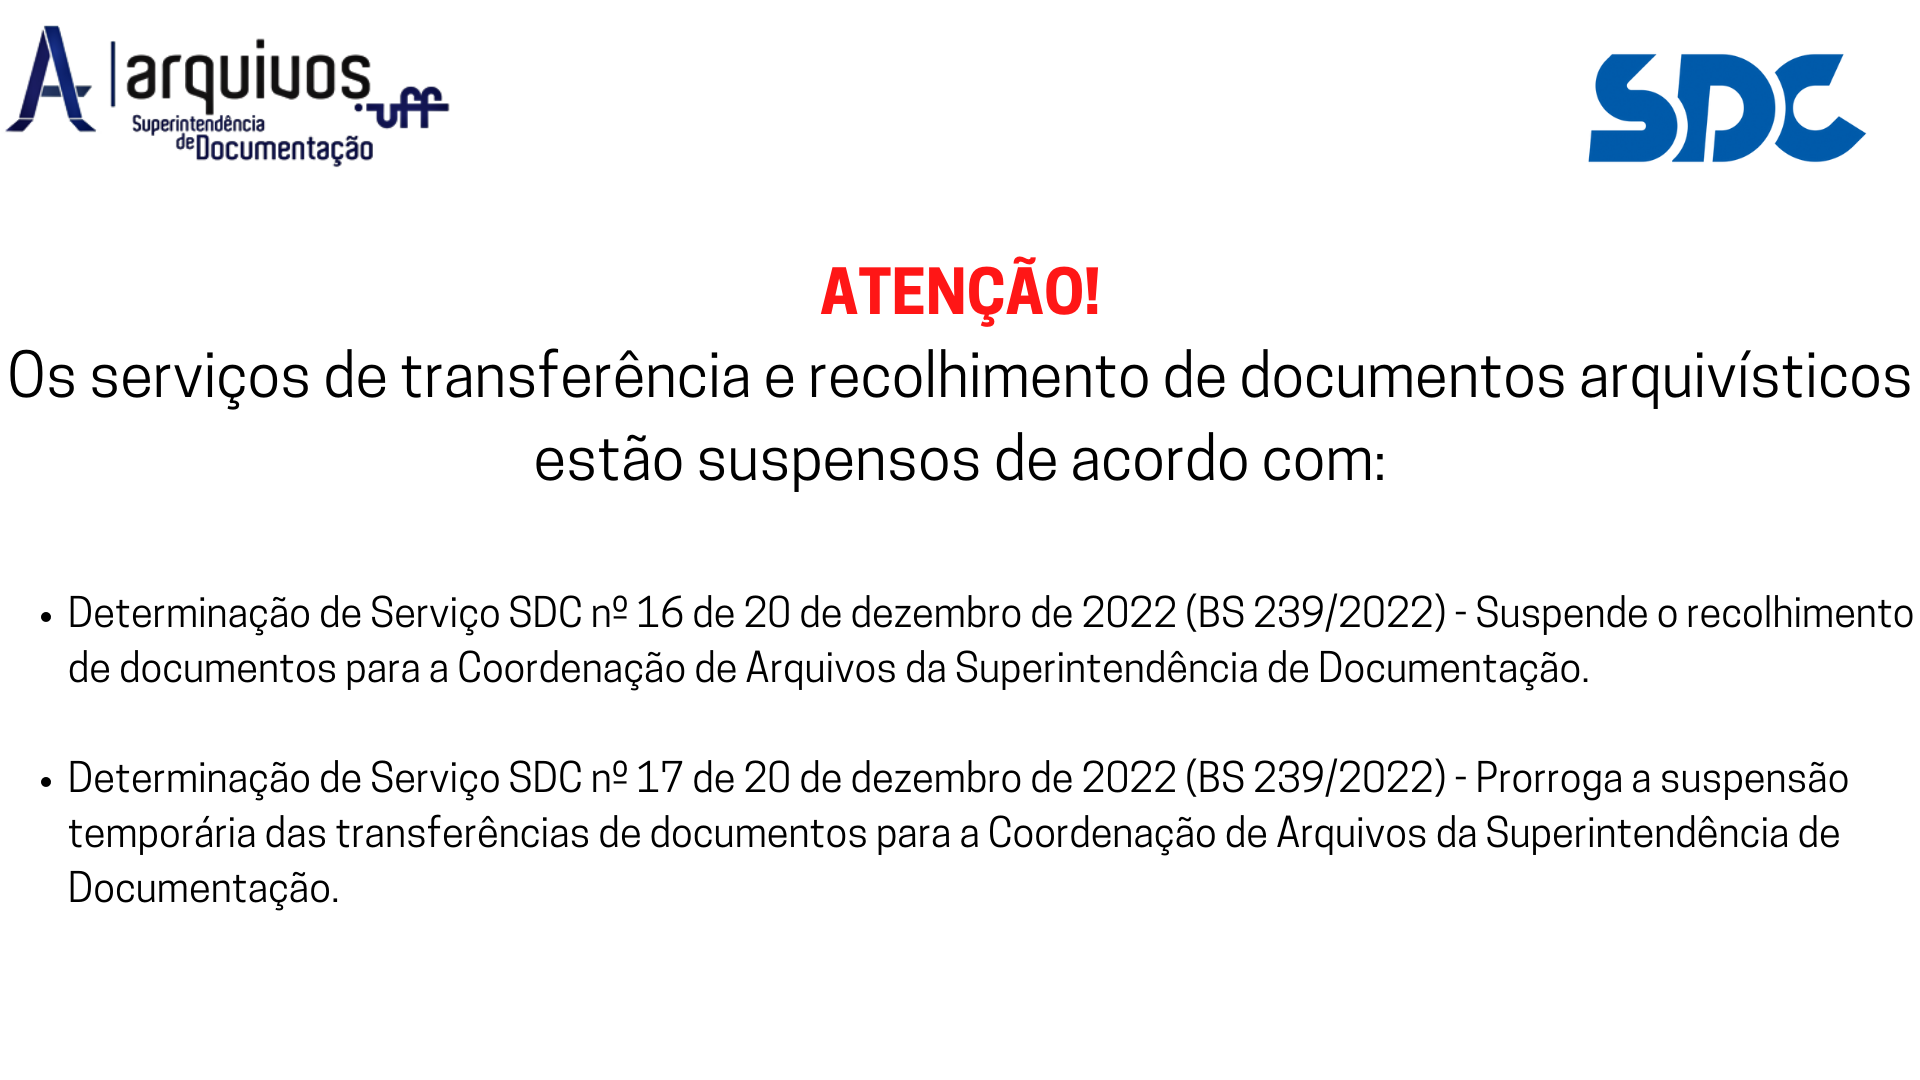 Informa suspensão de transferência e recolhimento de documentos ao arquivo